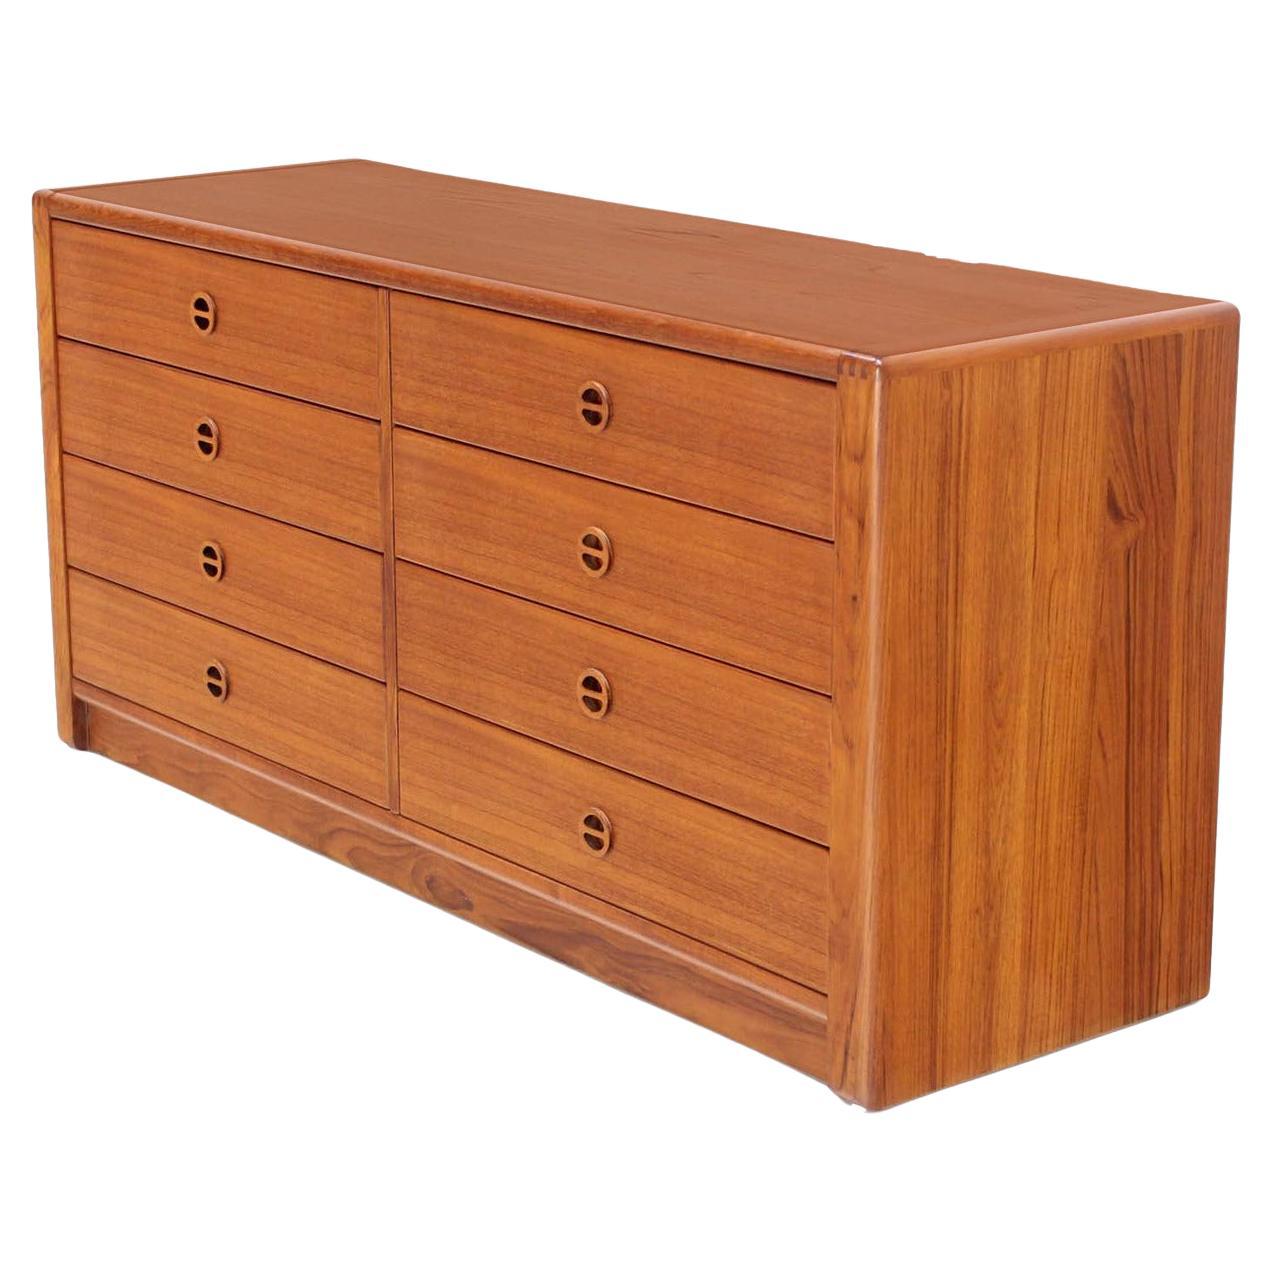 Danish Mid Century Modern Teak Eight Drawer Dresser Credenza Cabinet MINT!